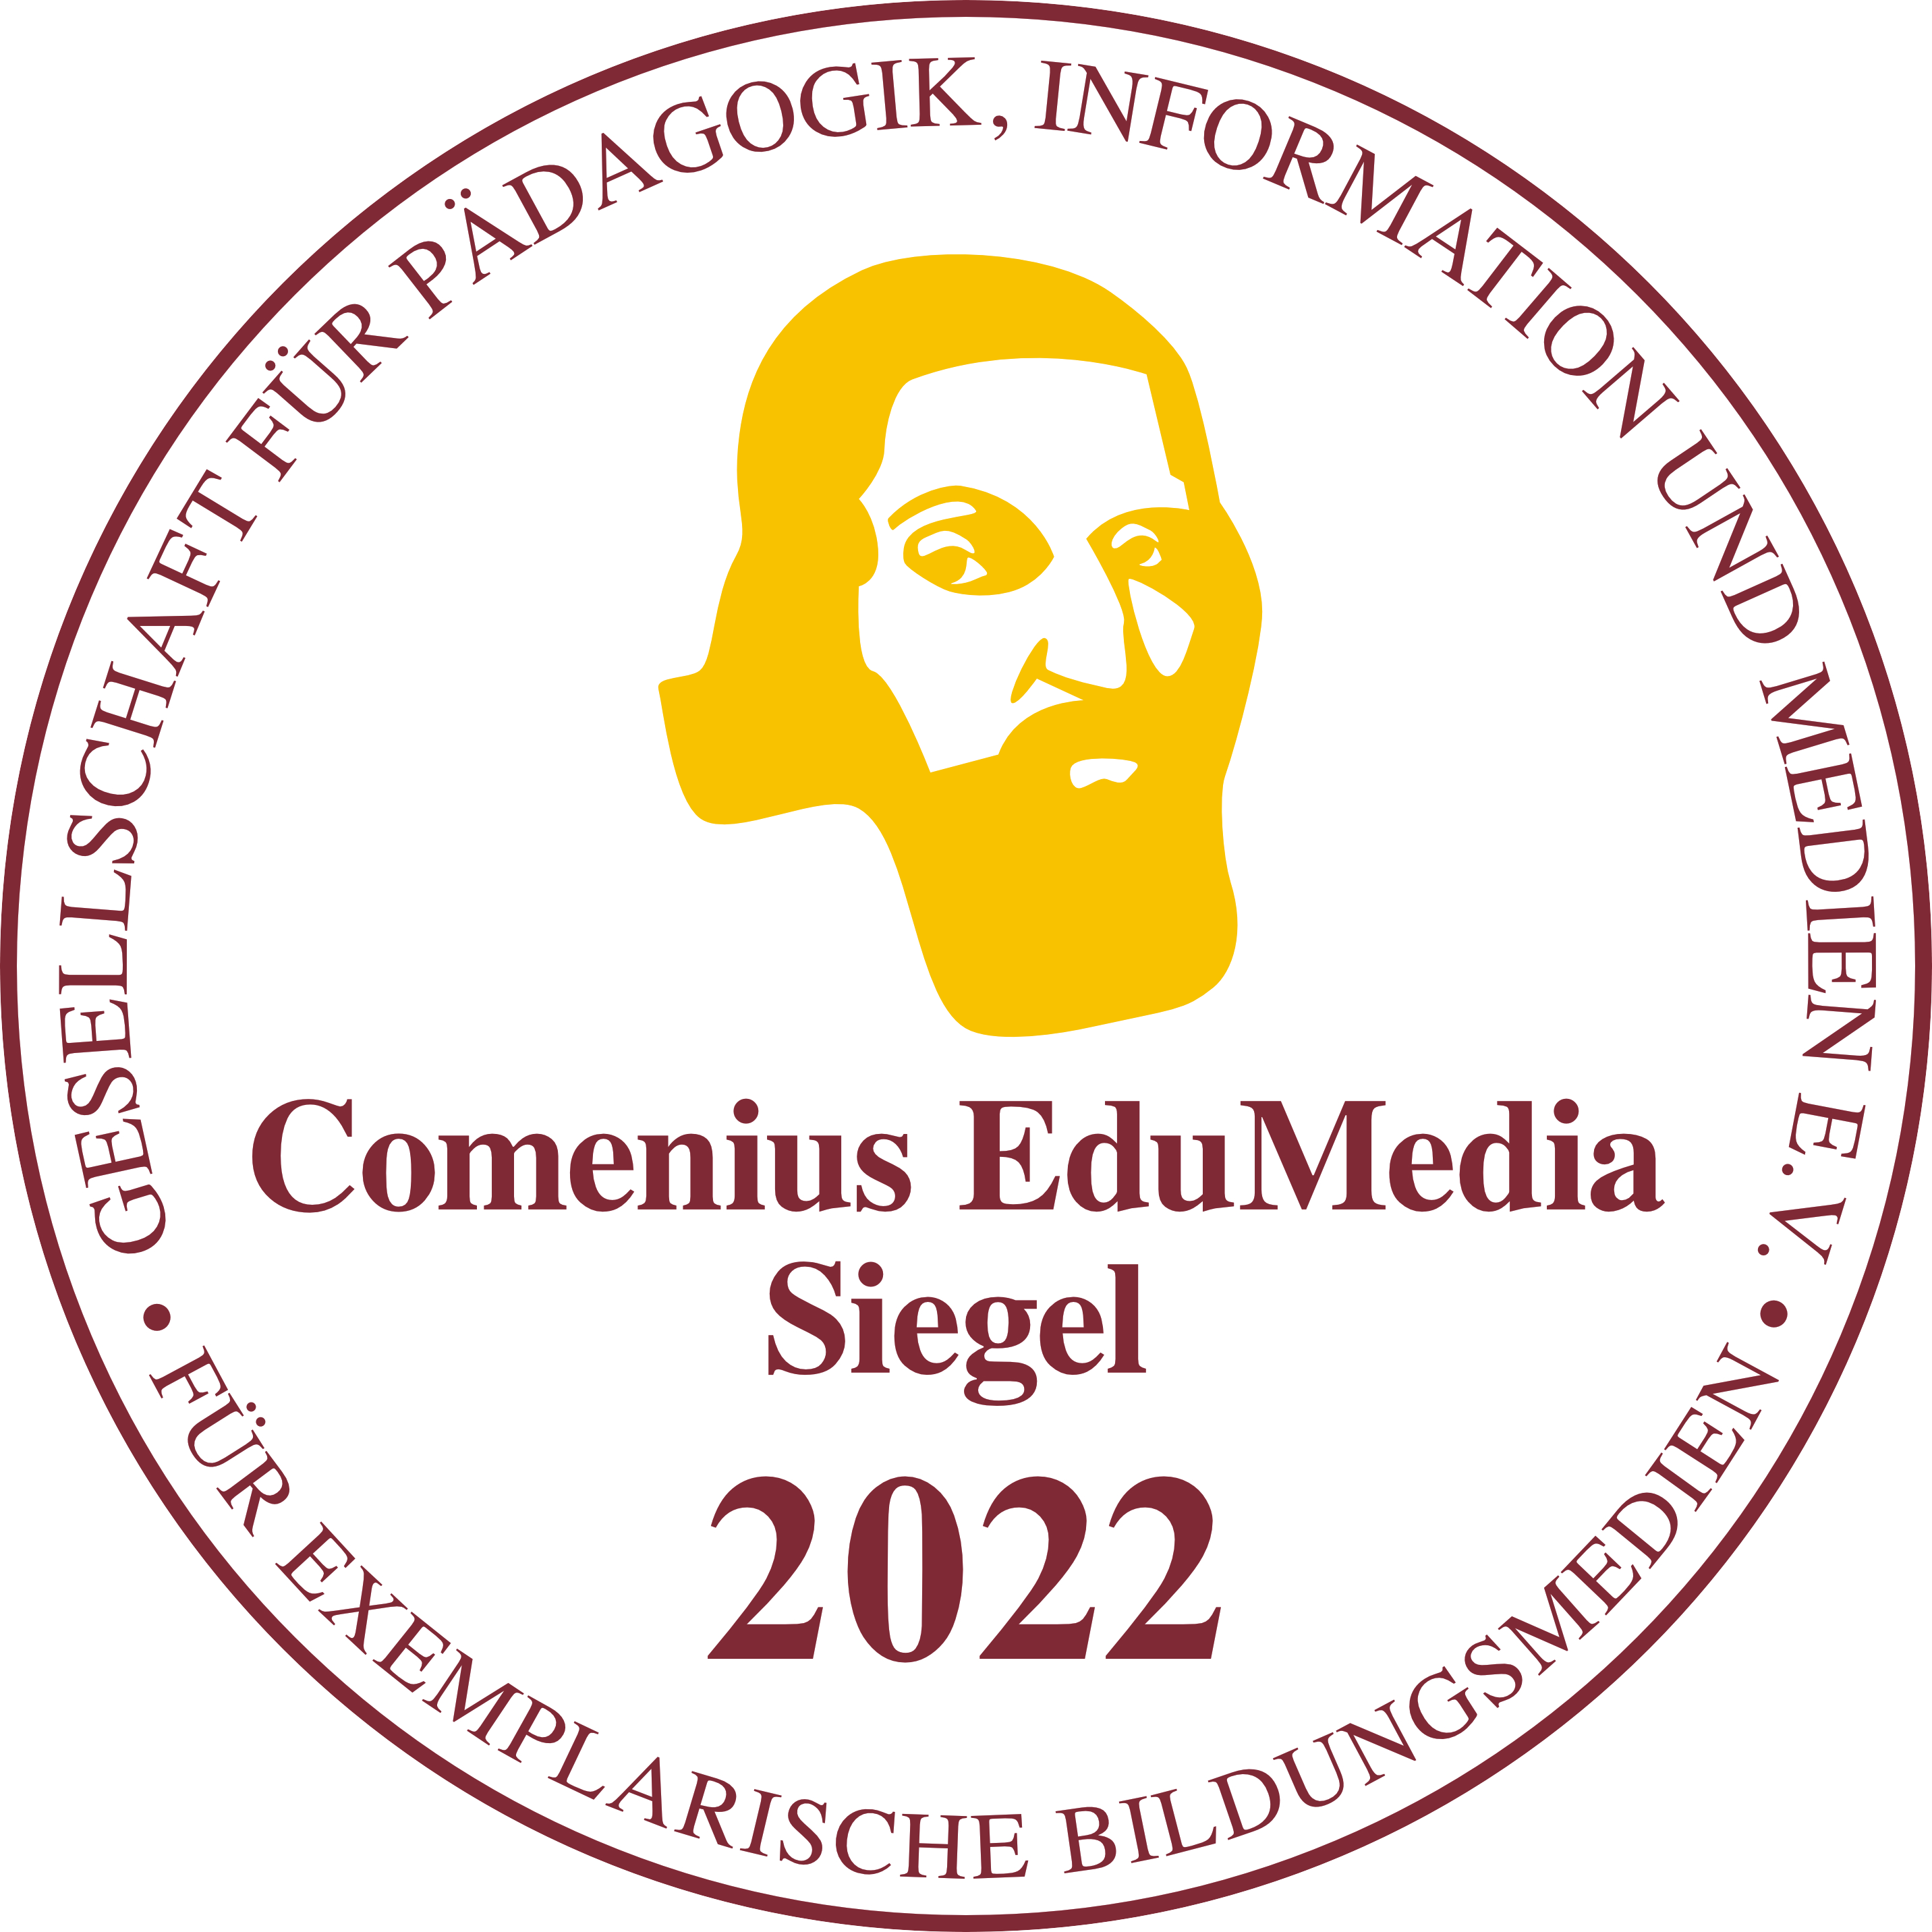 Comenius EduMedia Siegel 2022 TRANSPARENT